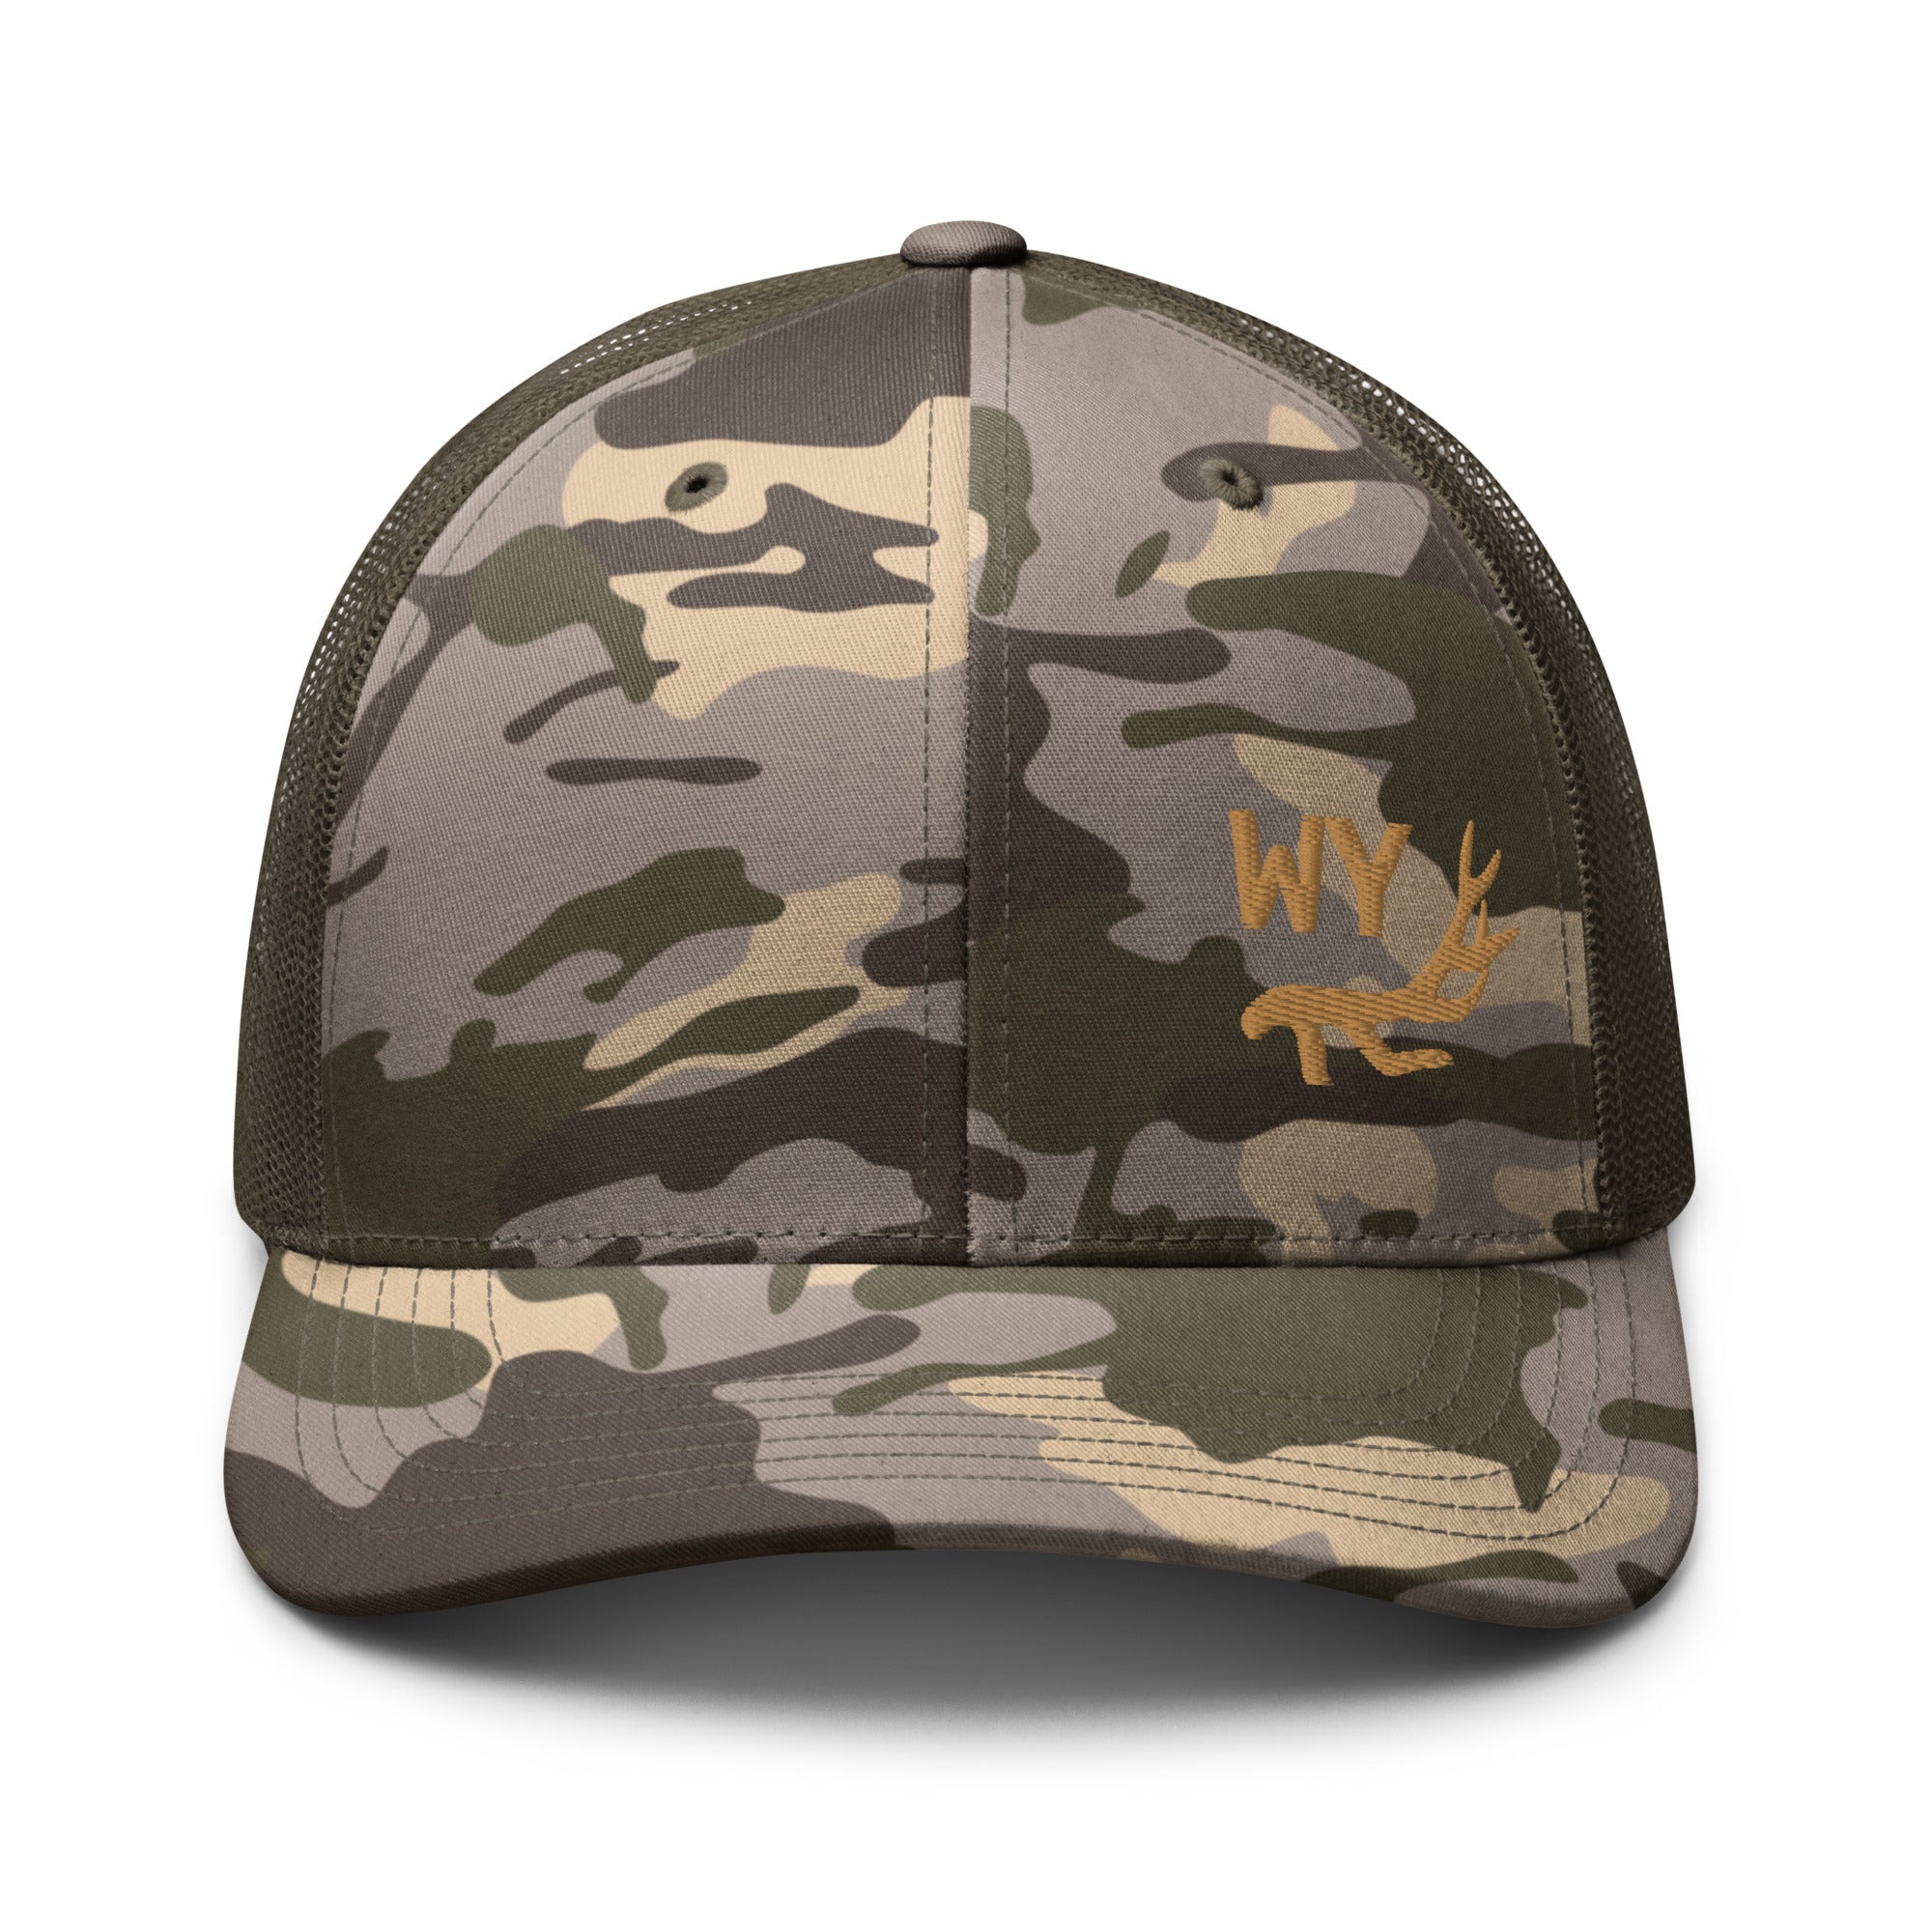 camouflage-trucker-hat-camo-olive-front-655e603da0edf.jpg